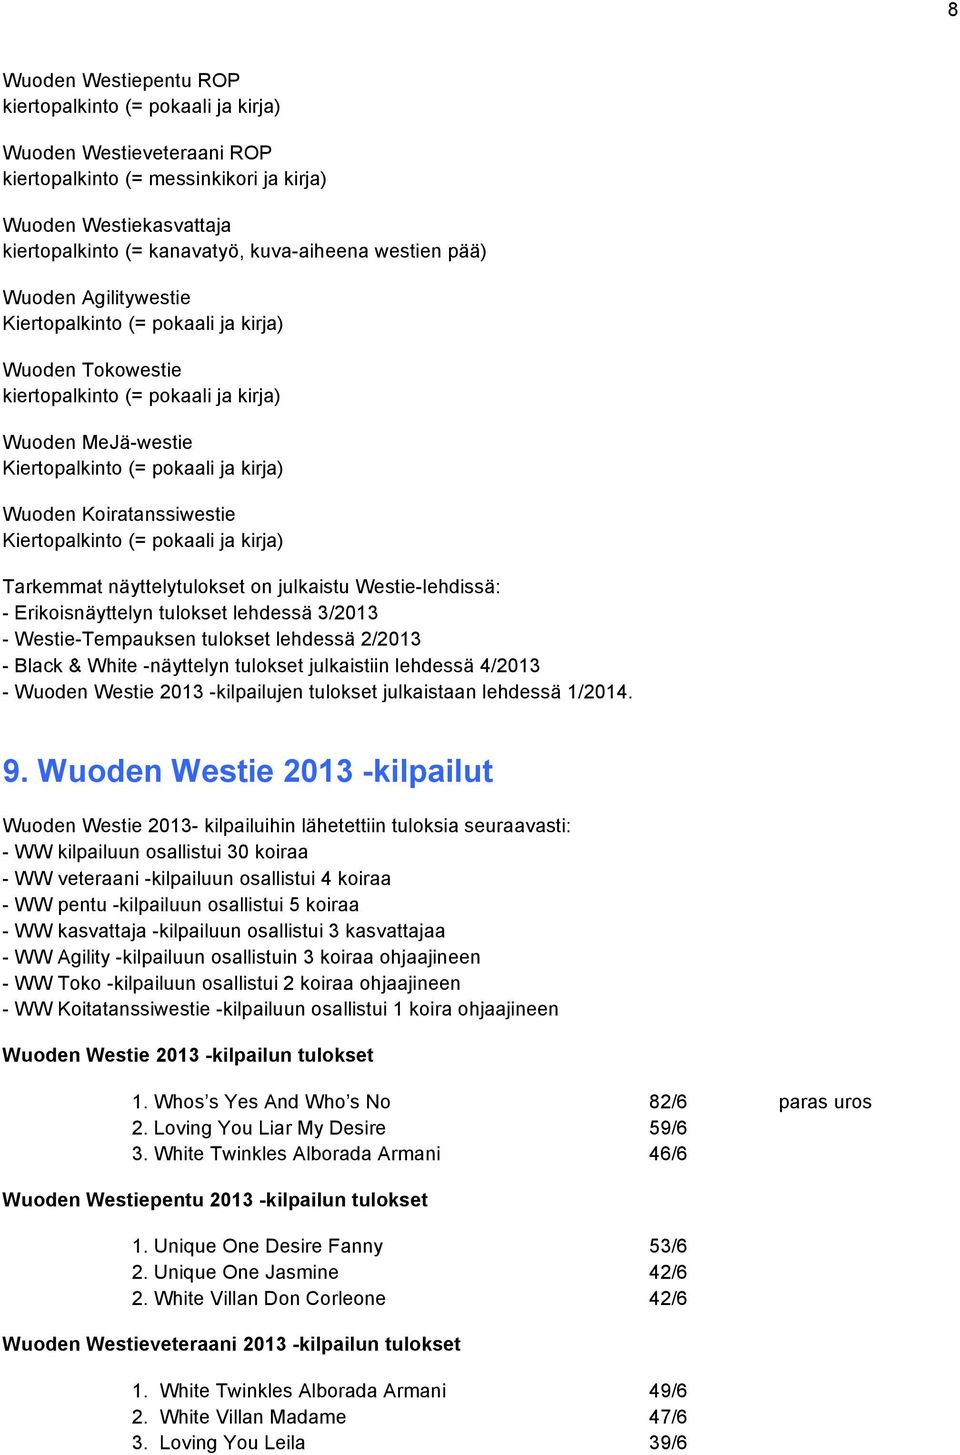 Koiratanssiwestie Kiertopalkinto (= pokaali ja kirja) Tarkemmat näyttelytulokset on julkaistu Westie-lehdissä: - Erikoisnäyttelyn tulokset lehdessä 3/2013 - Westie-Tempauksen tulokset lehdessä 2/2013